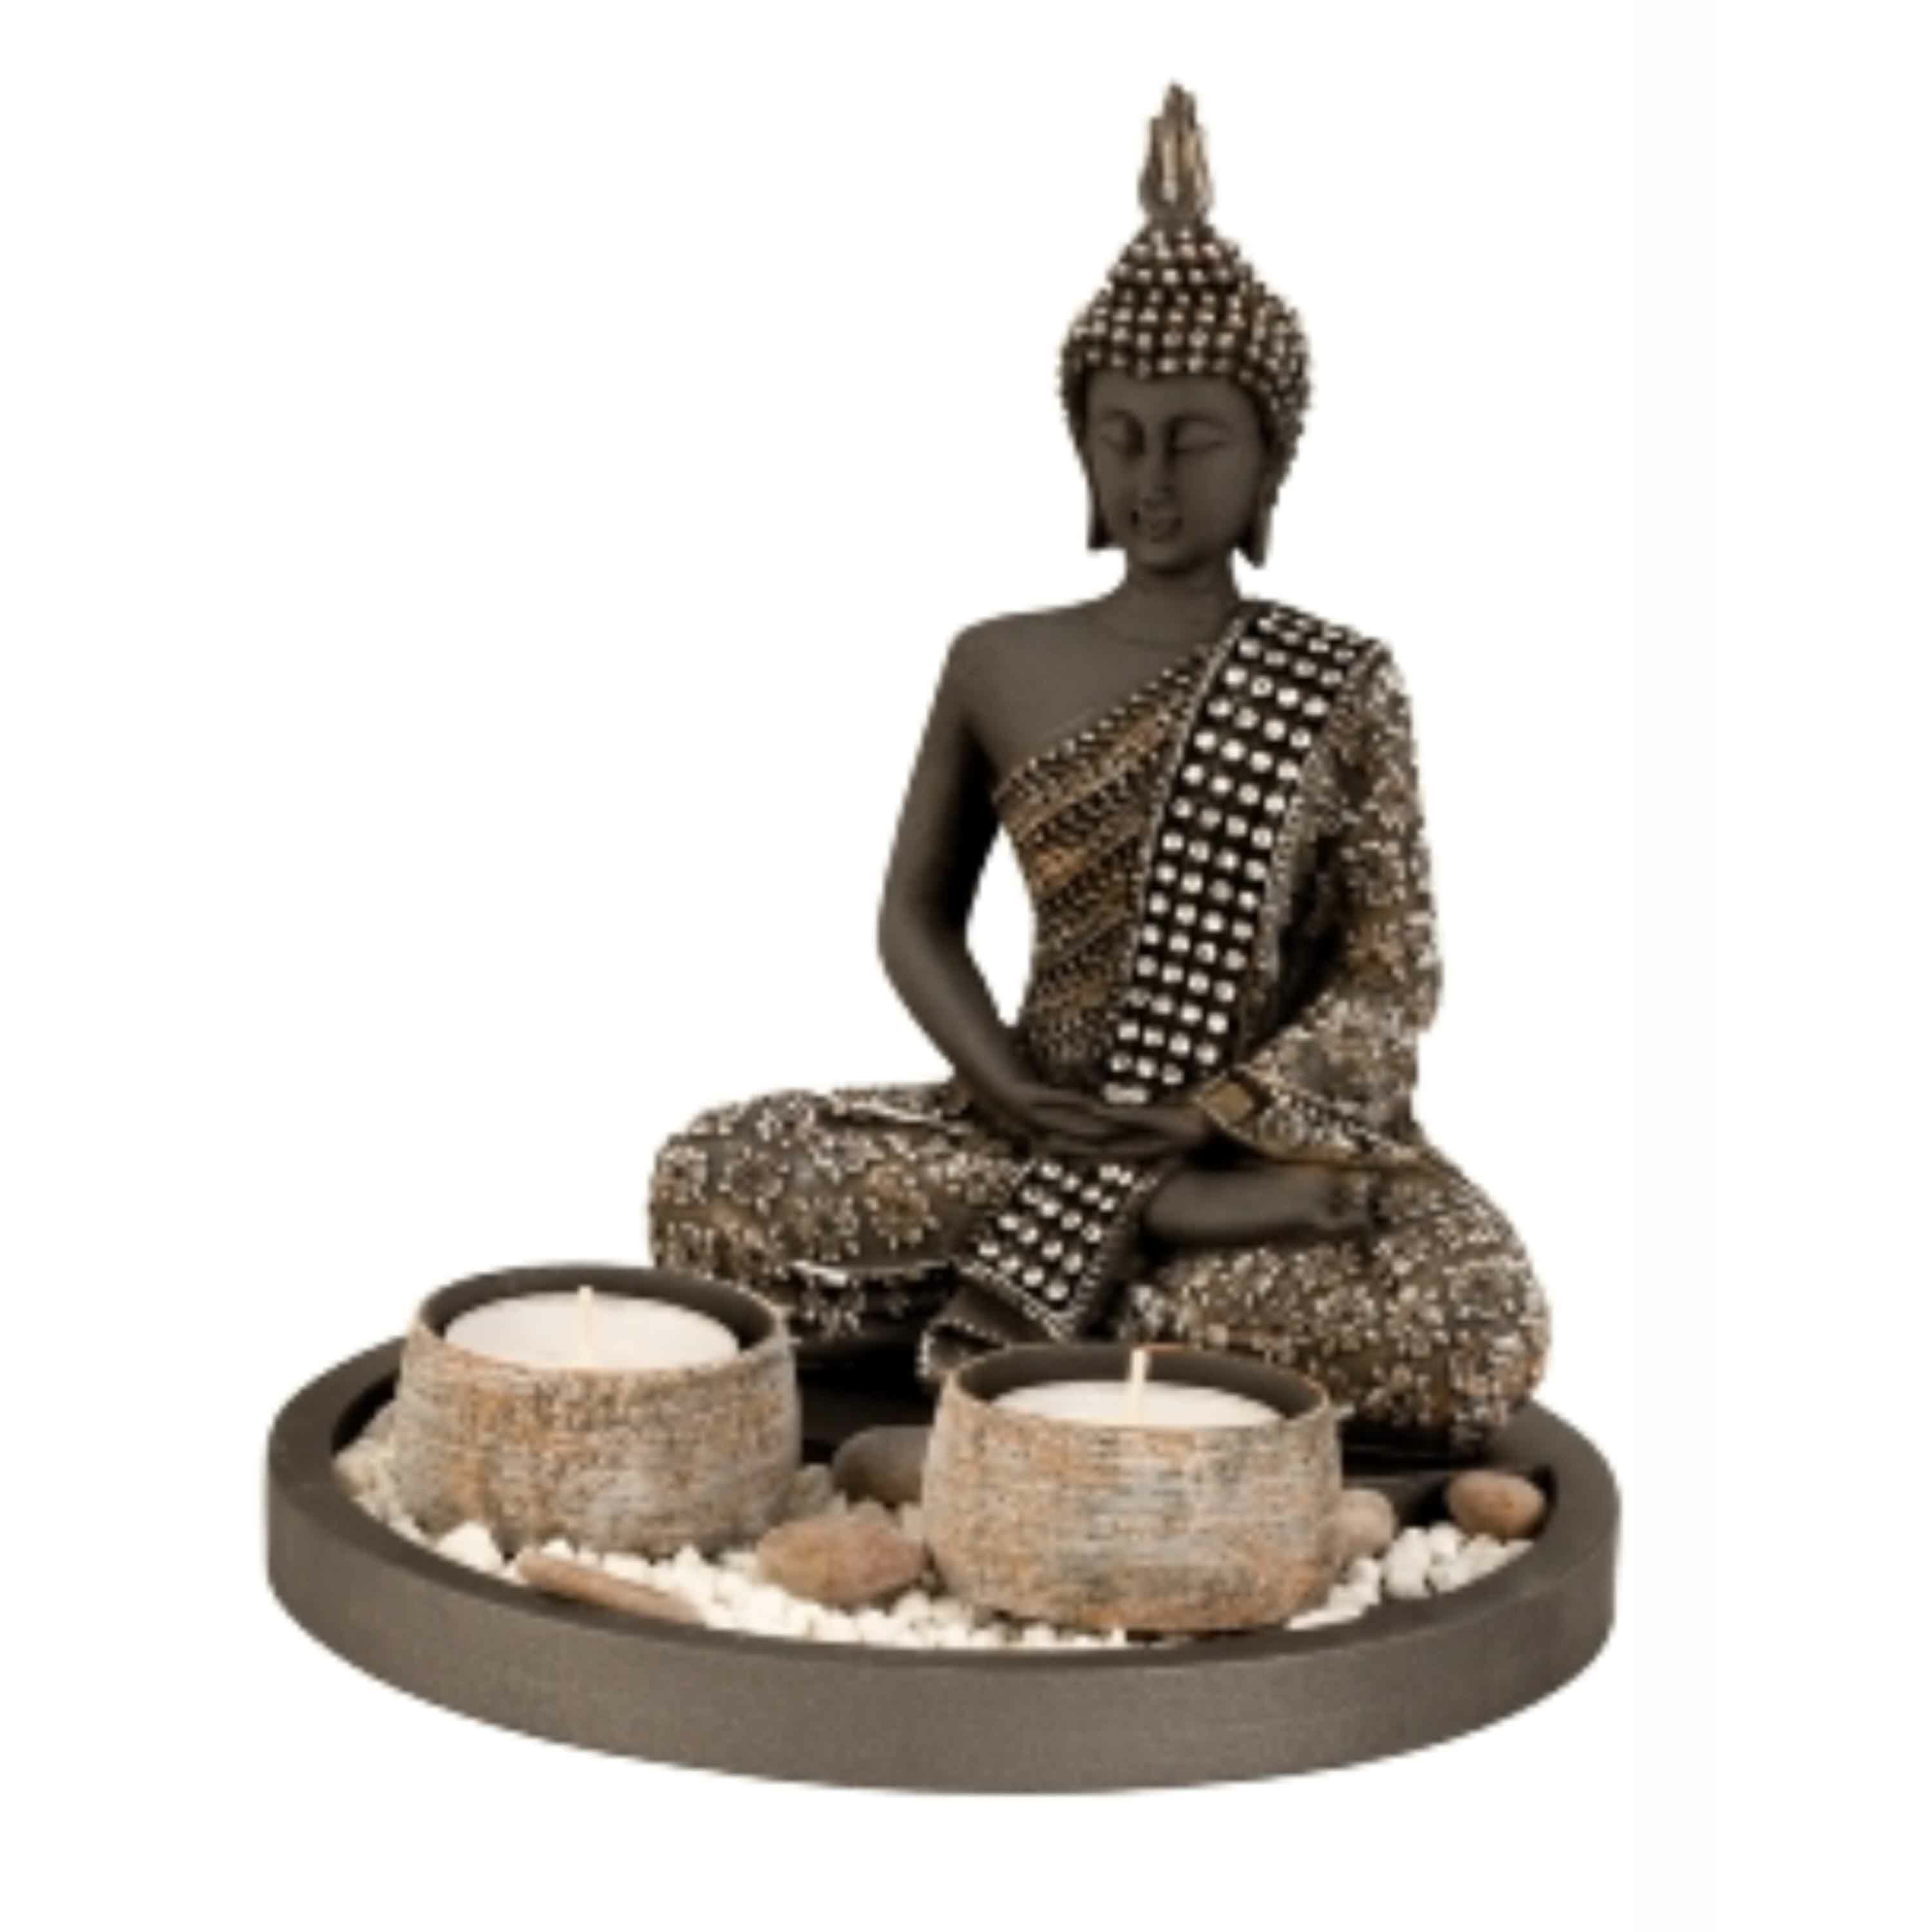 Boeddha beeldje met 2 kaarshouders op schaal - kunststeen - goud/zwart - 18 x 21 cm - deco artikel -